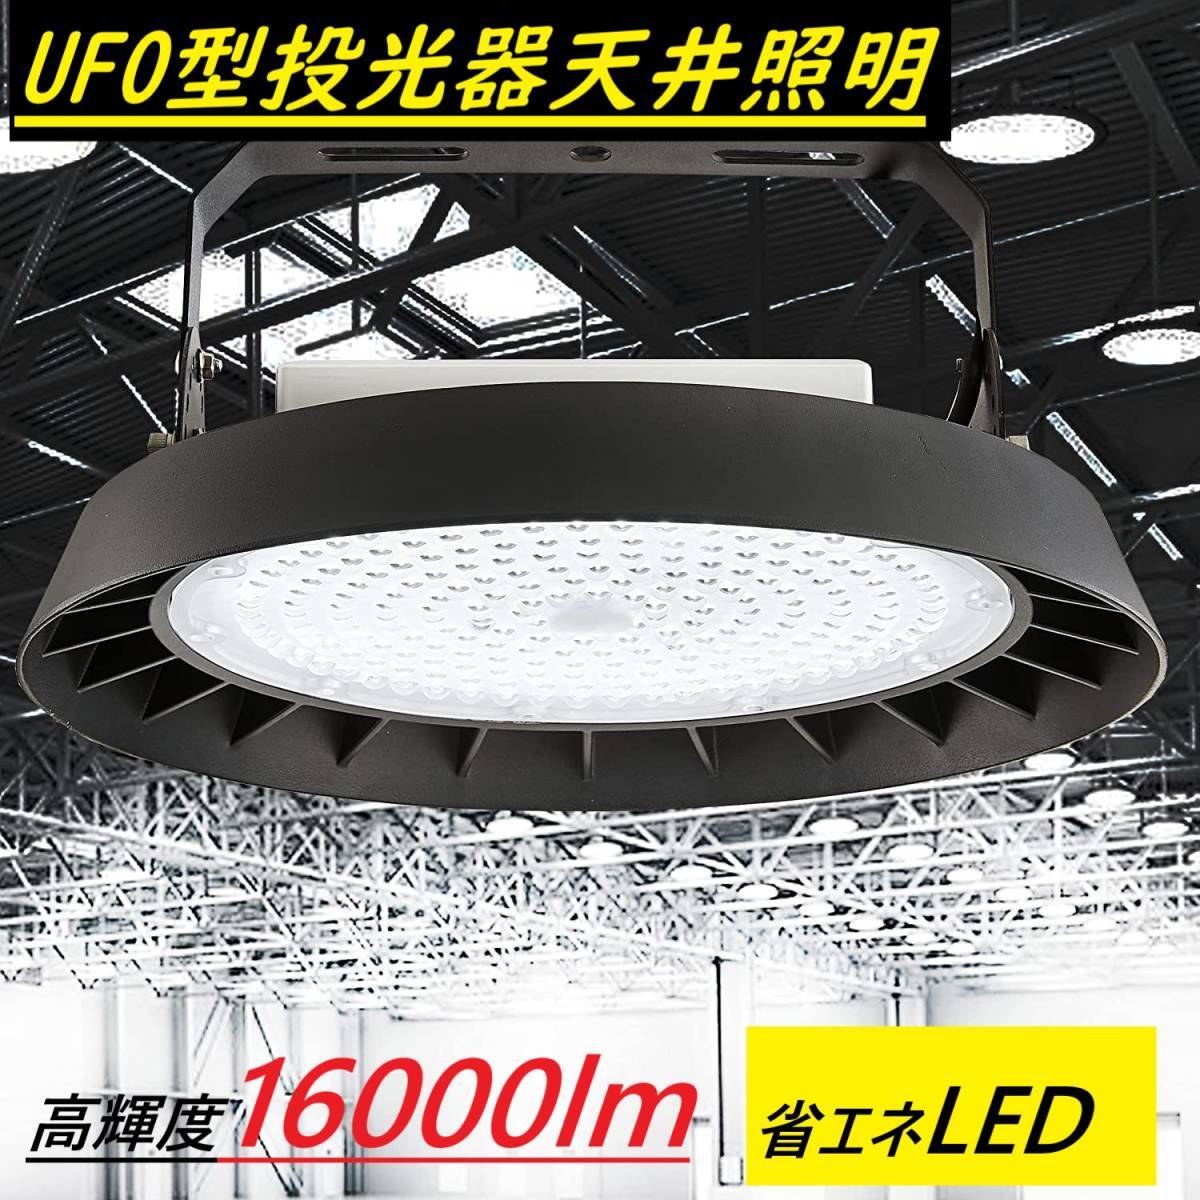 3 шт. комплект *100W UFO type LED прожекторное освещение высокий Bay свет экономия энергии продолжительный срок службы высота потолочный светильник днем свет цвет 6000K 16000lm PSE засвидетельствование IP65 водонепроницаемый пыленепроницаемый угол настройка 